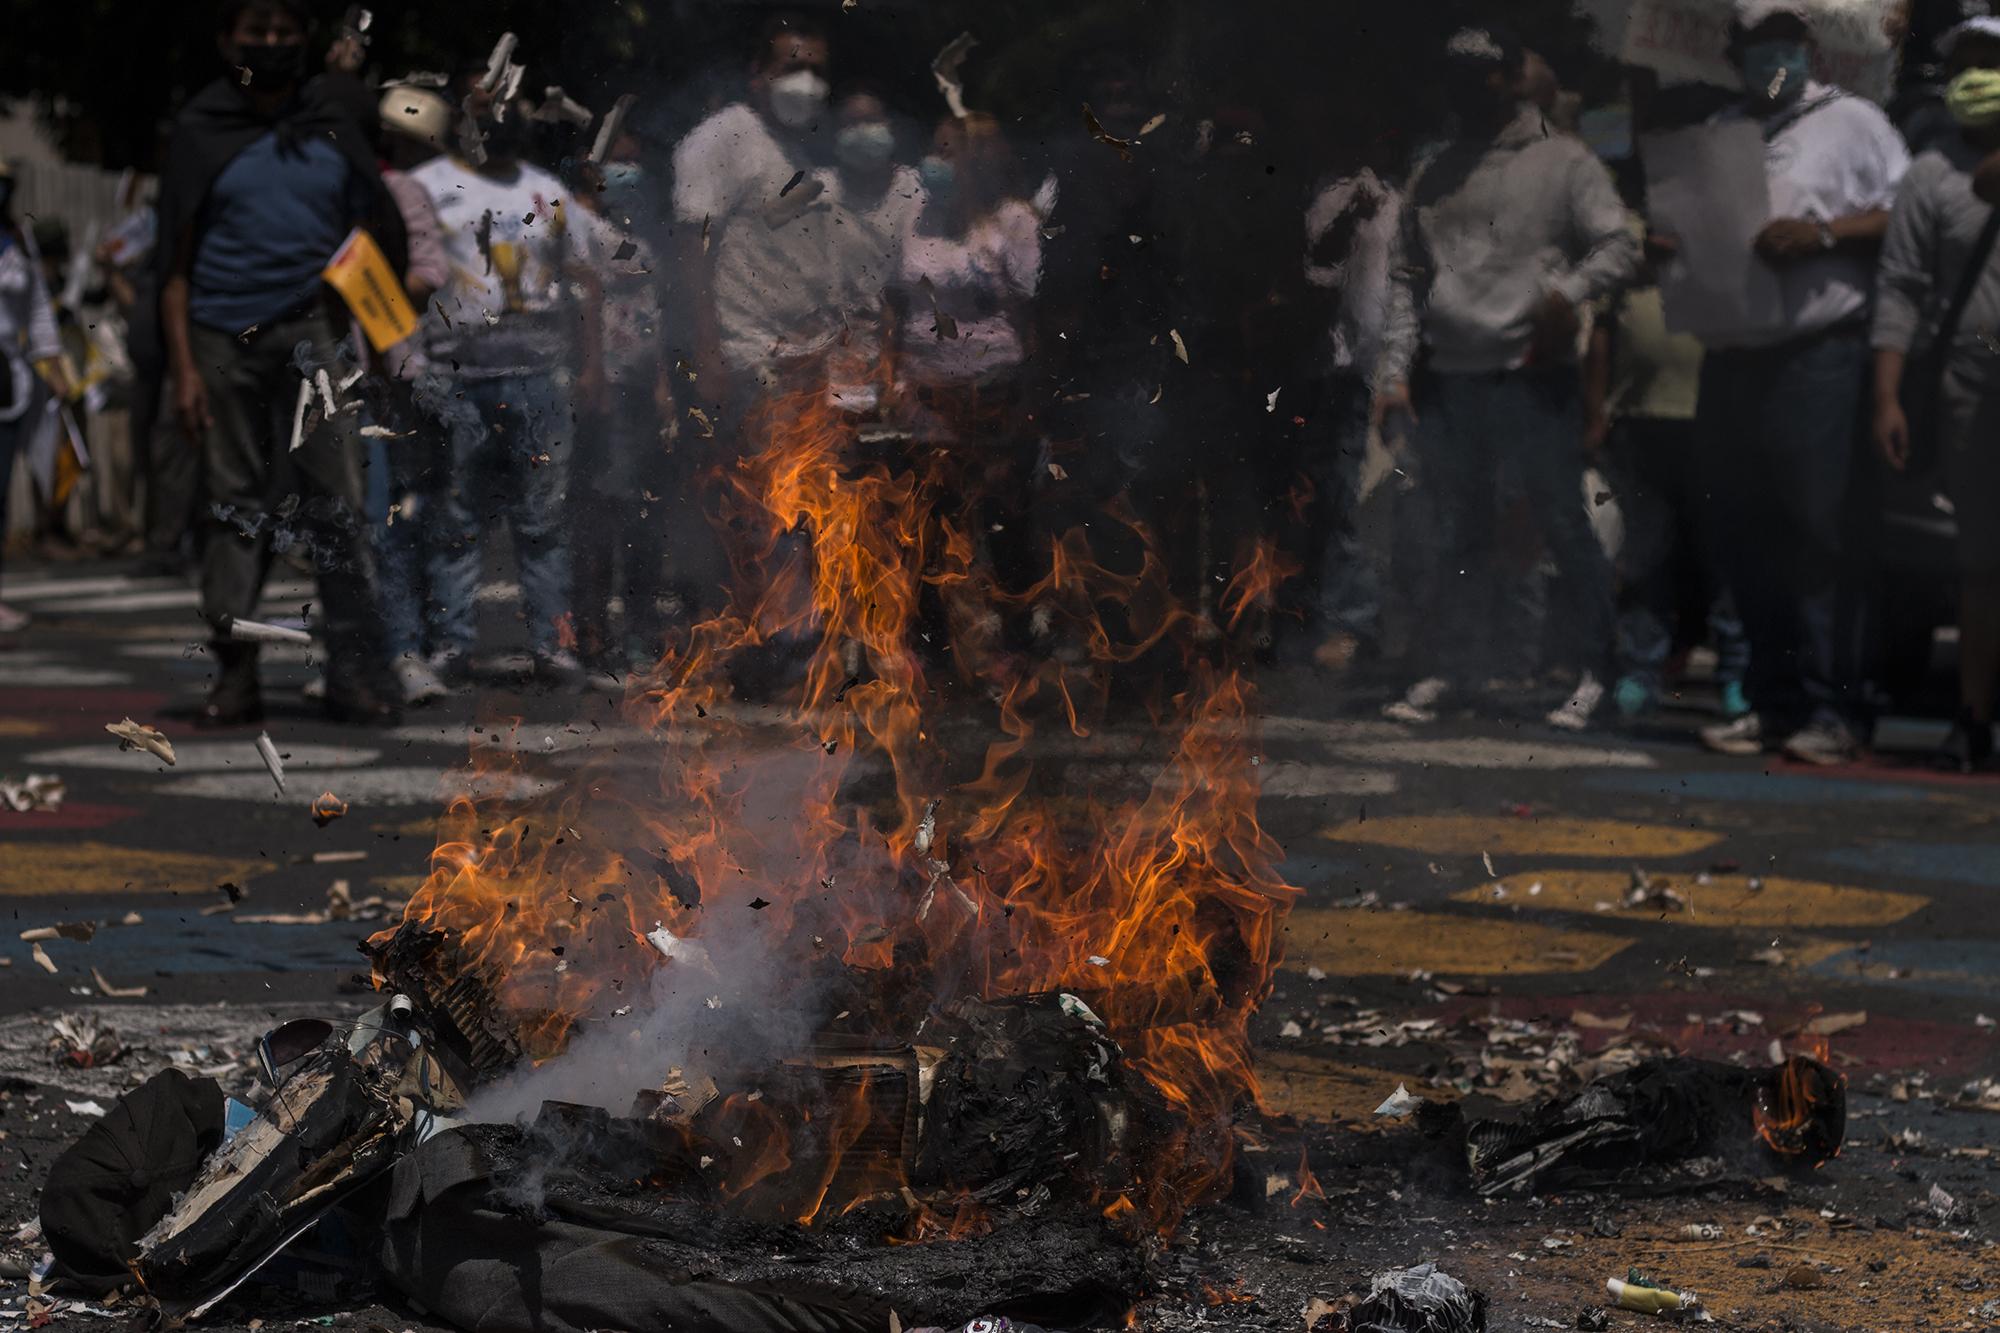 Al final de la marcha, un grupo de ciudadanos prendió fuego a un muñeco de trapo con la figura del presidente Bukele, que se burló de la marcha a través de sus redes sociales. Foto de El Faro: Víctor Peña. 